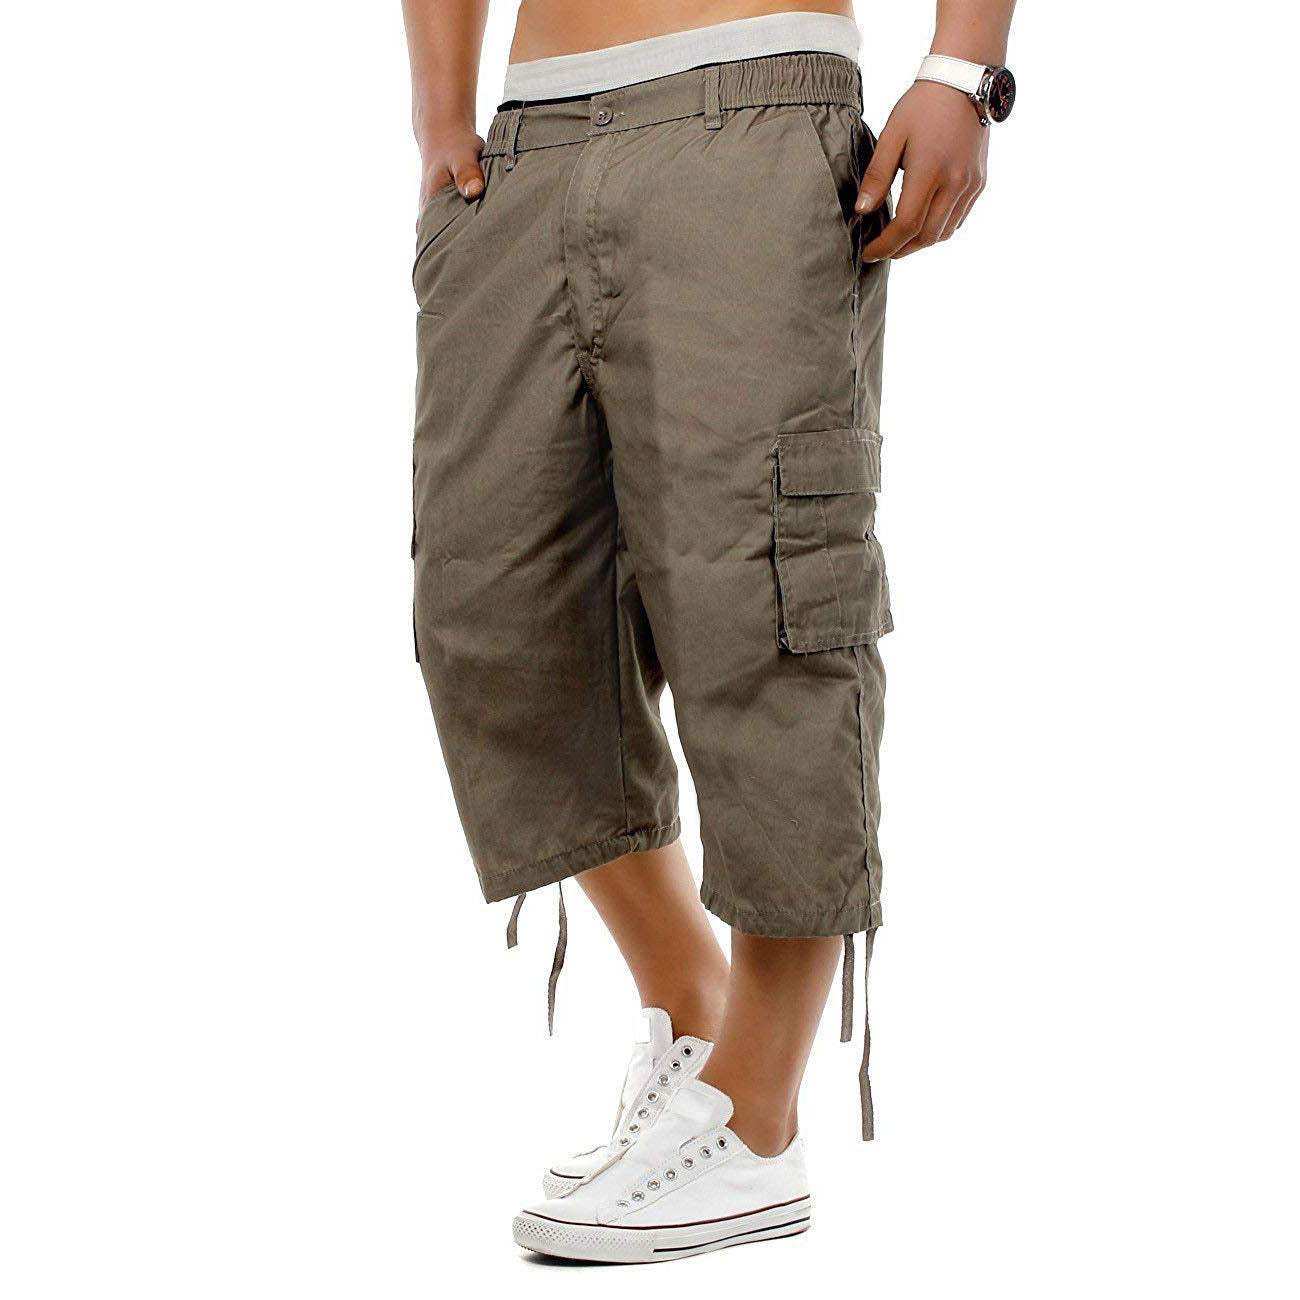 Pantaloni moderni ?i casual pentru barbati, trei sferturi, cu elastic in talie, model cool pentru vara